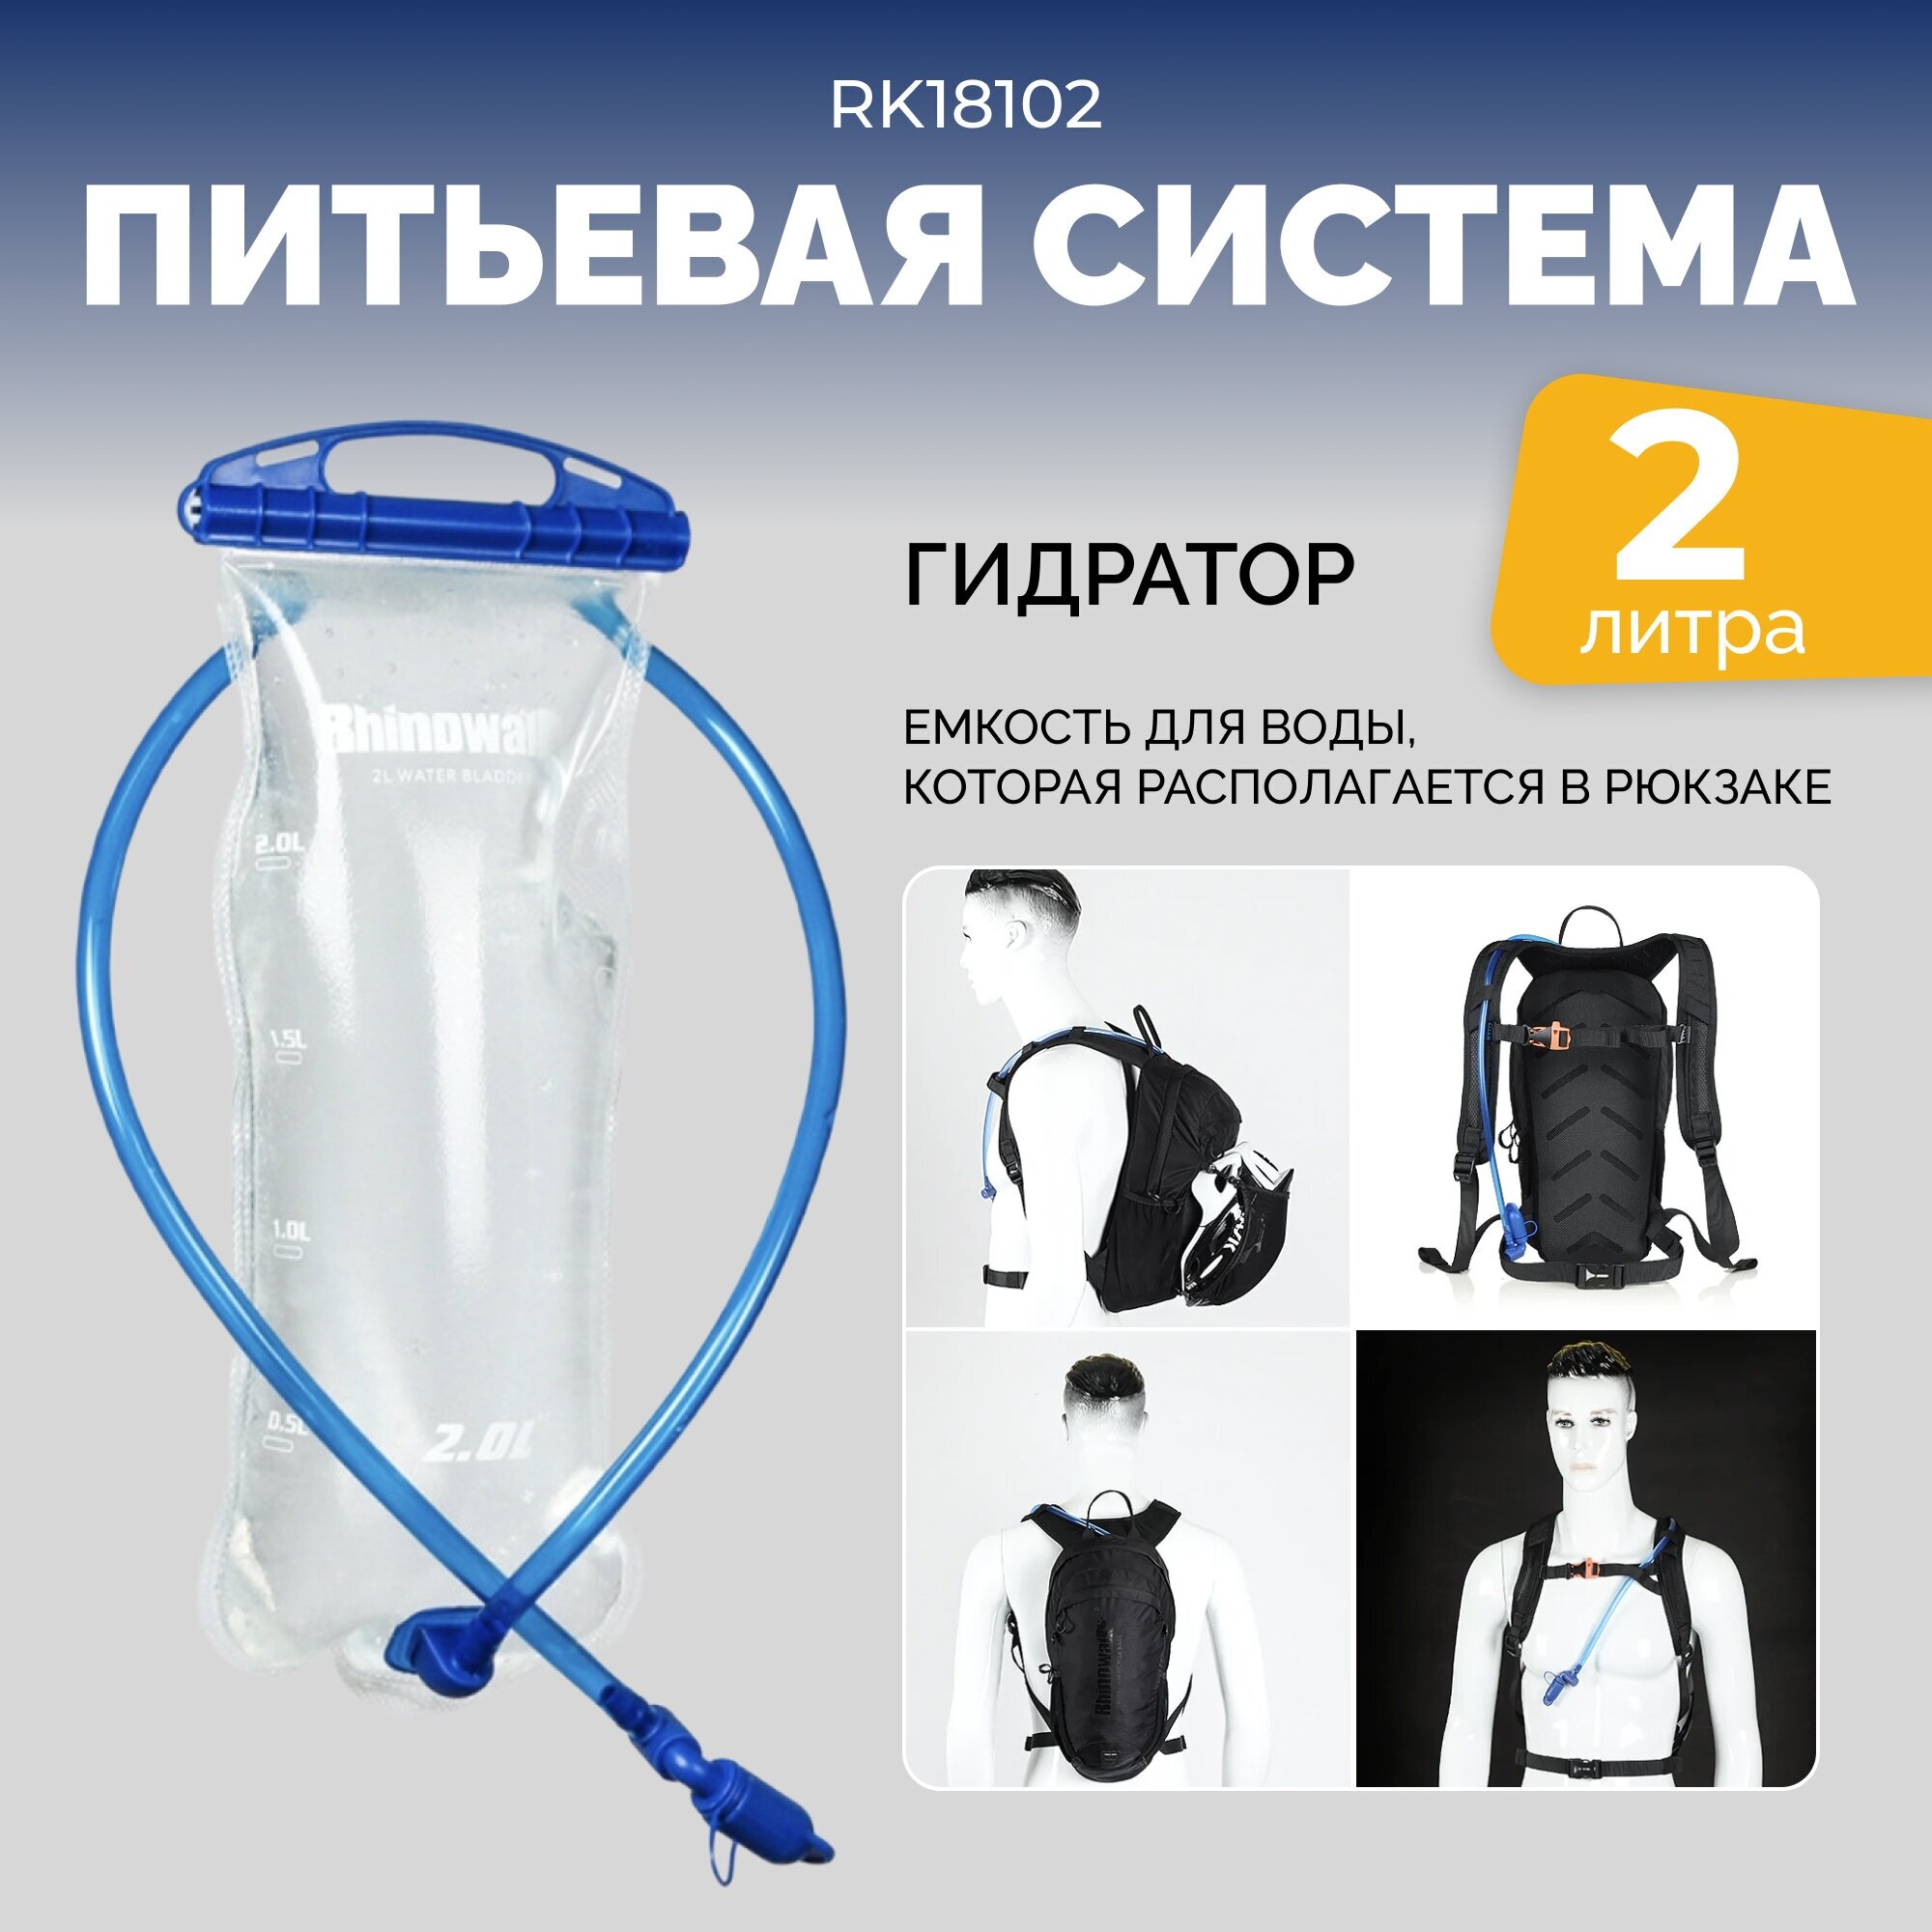 Гидратор, питьевая система, мягкая фляга Rhinowalk 2 Литра RK18102